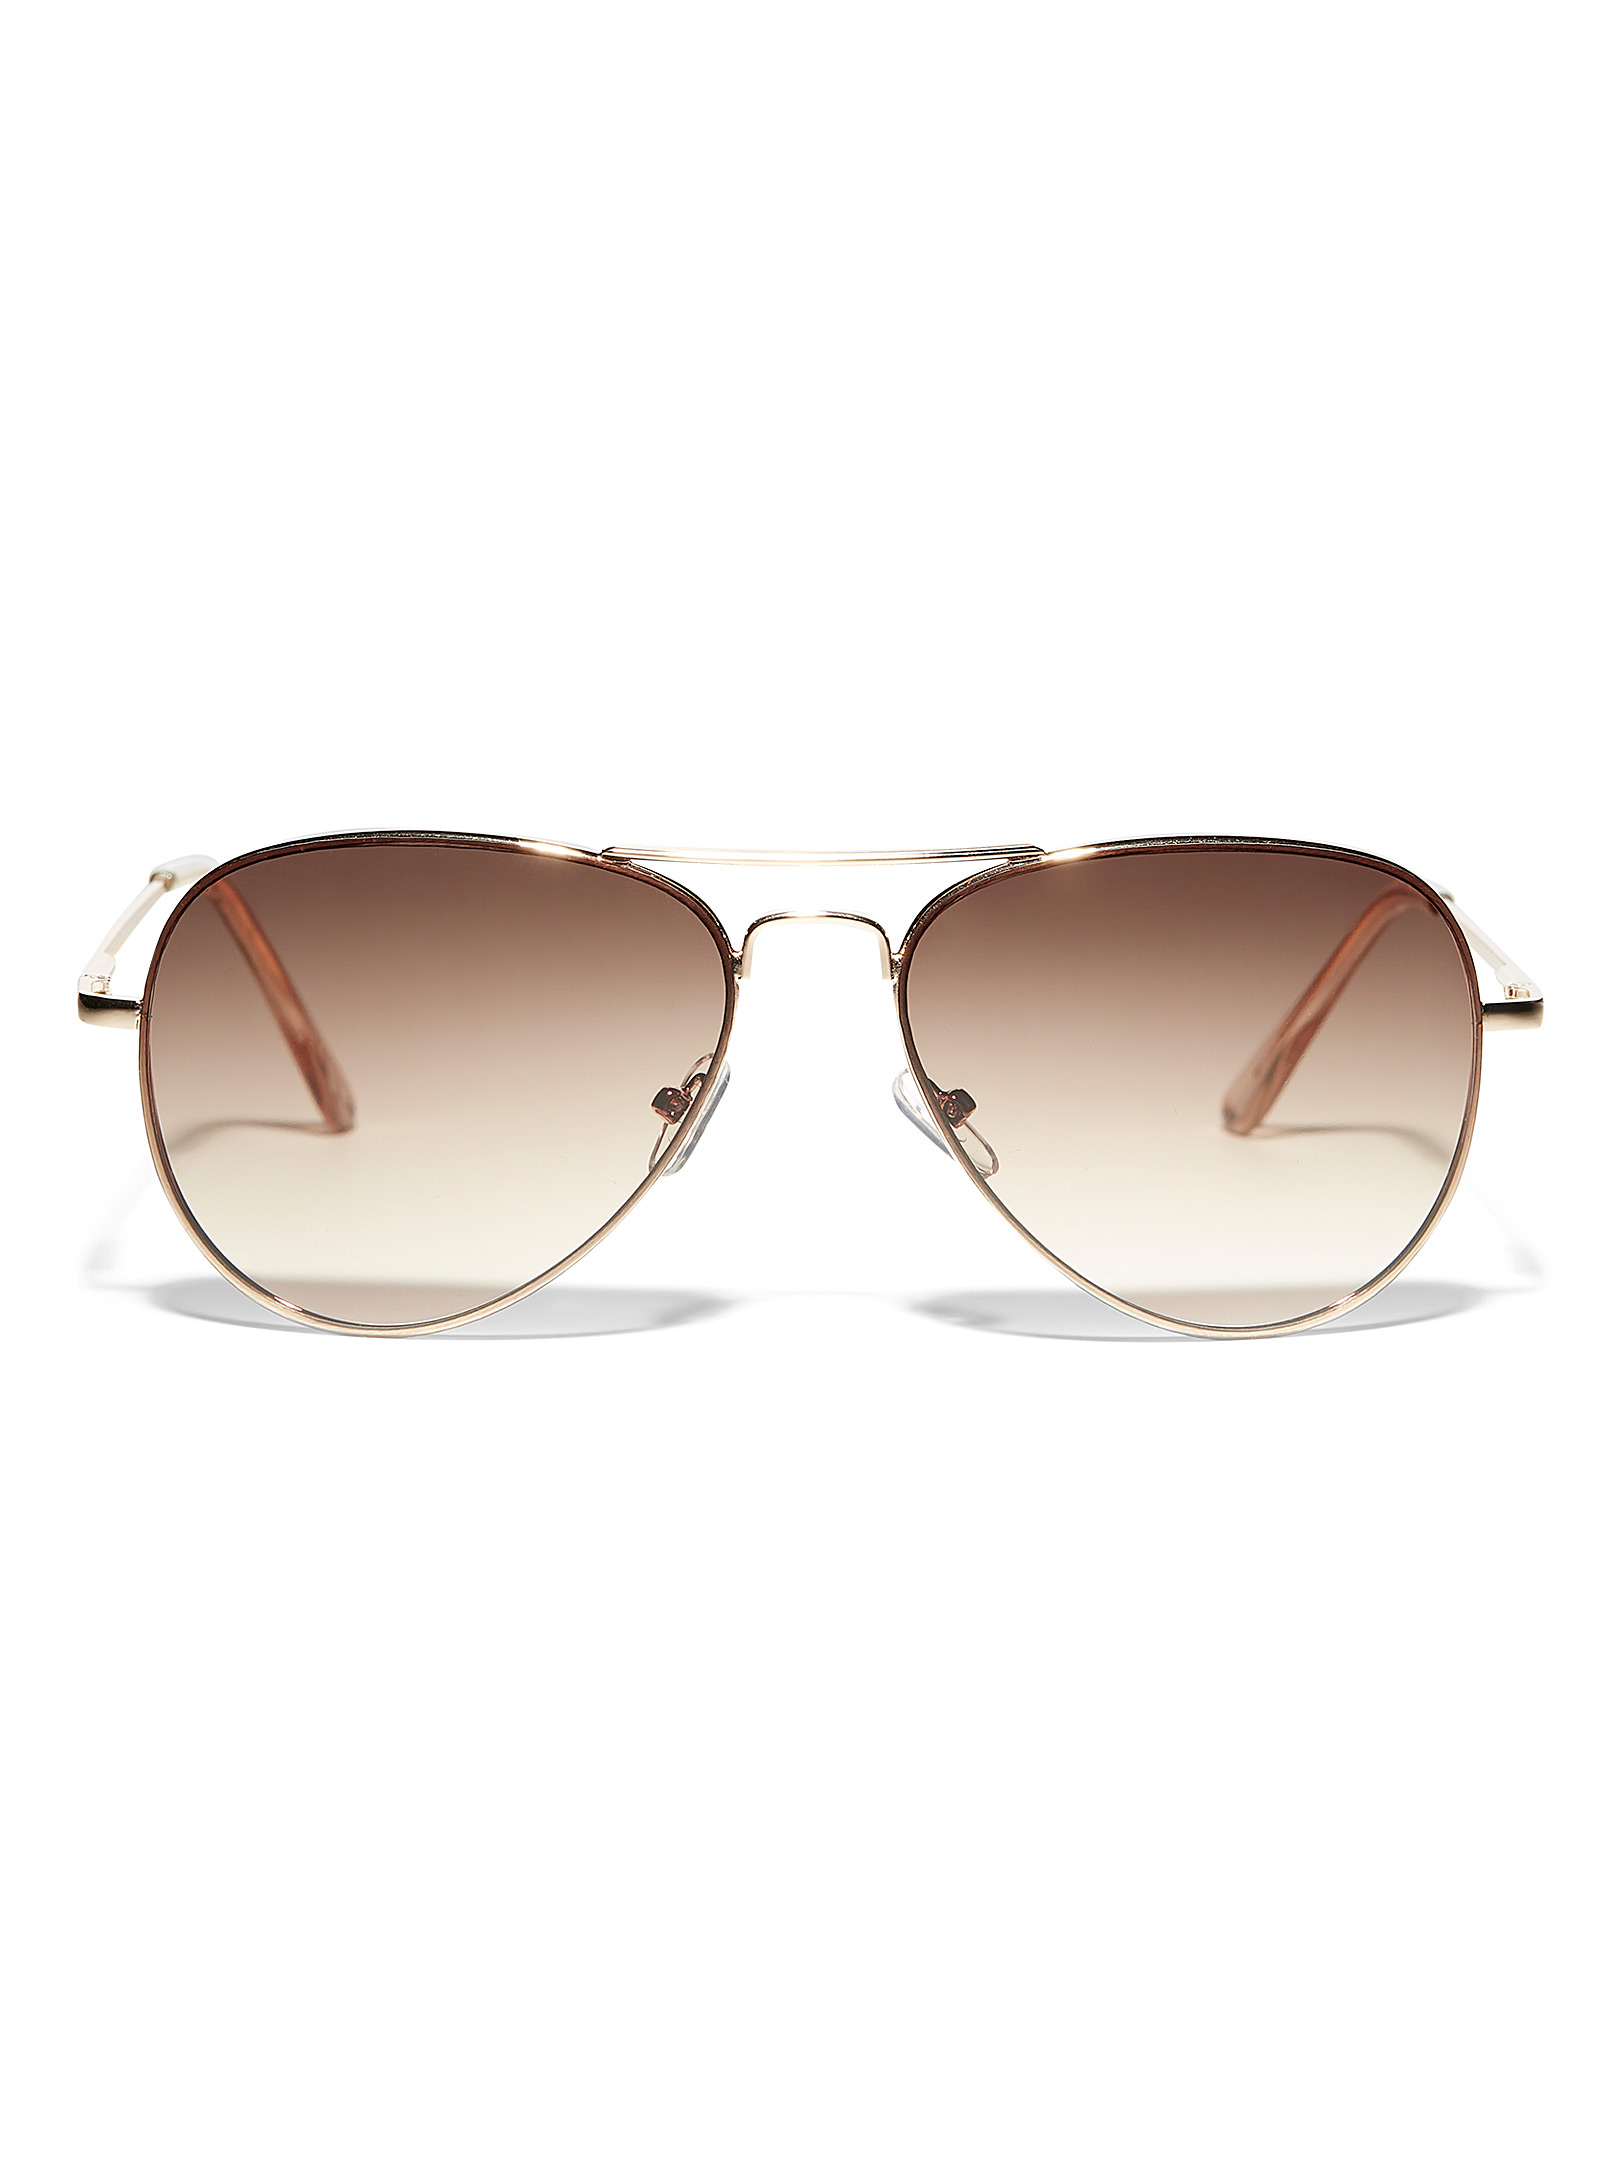 Simons - Women's Maddy aviator sunglasses